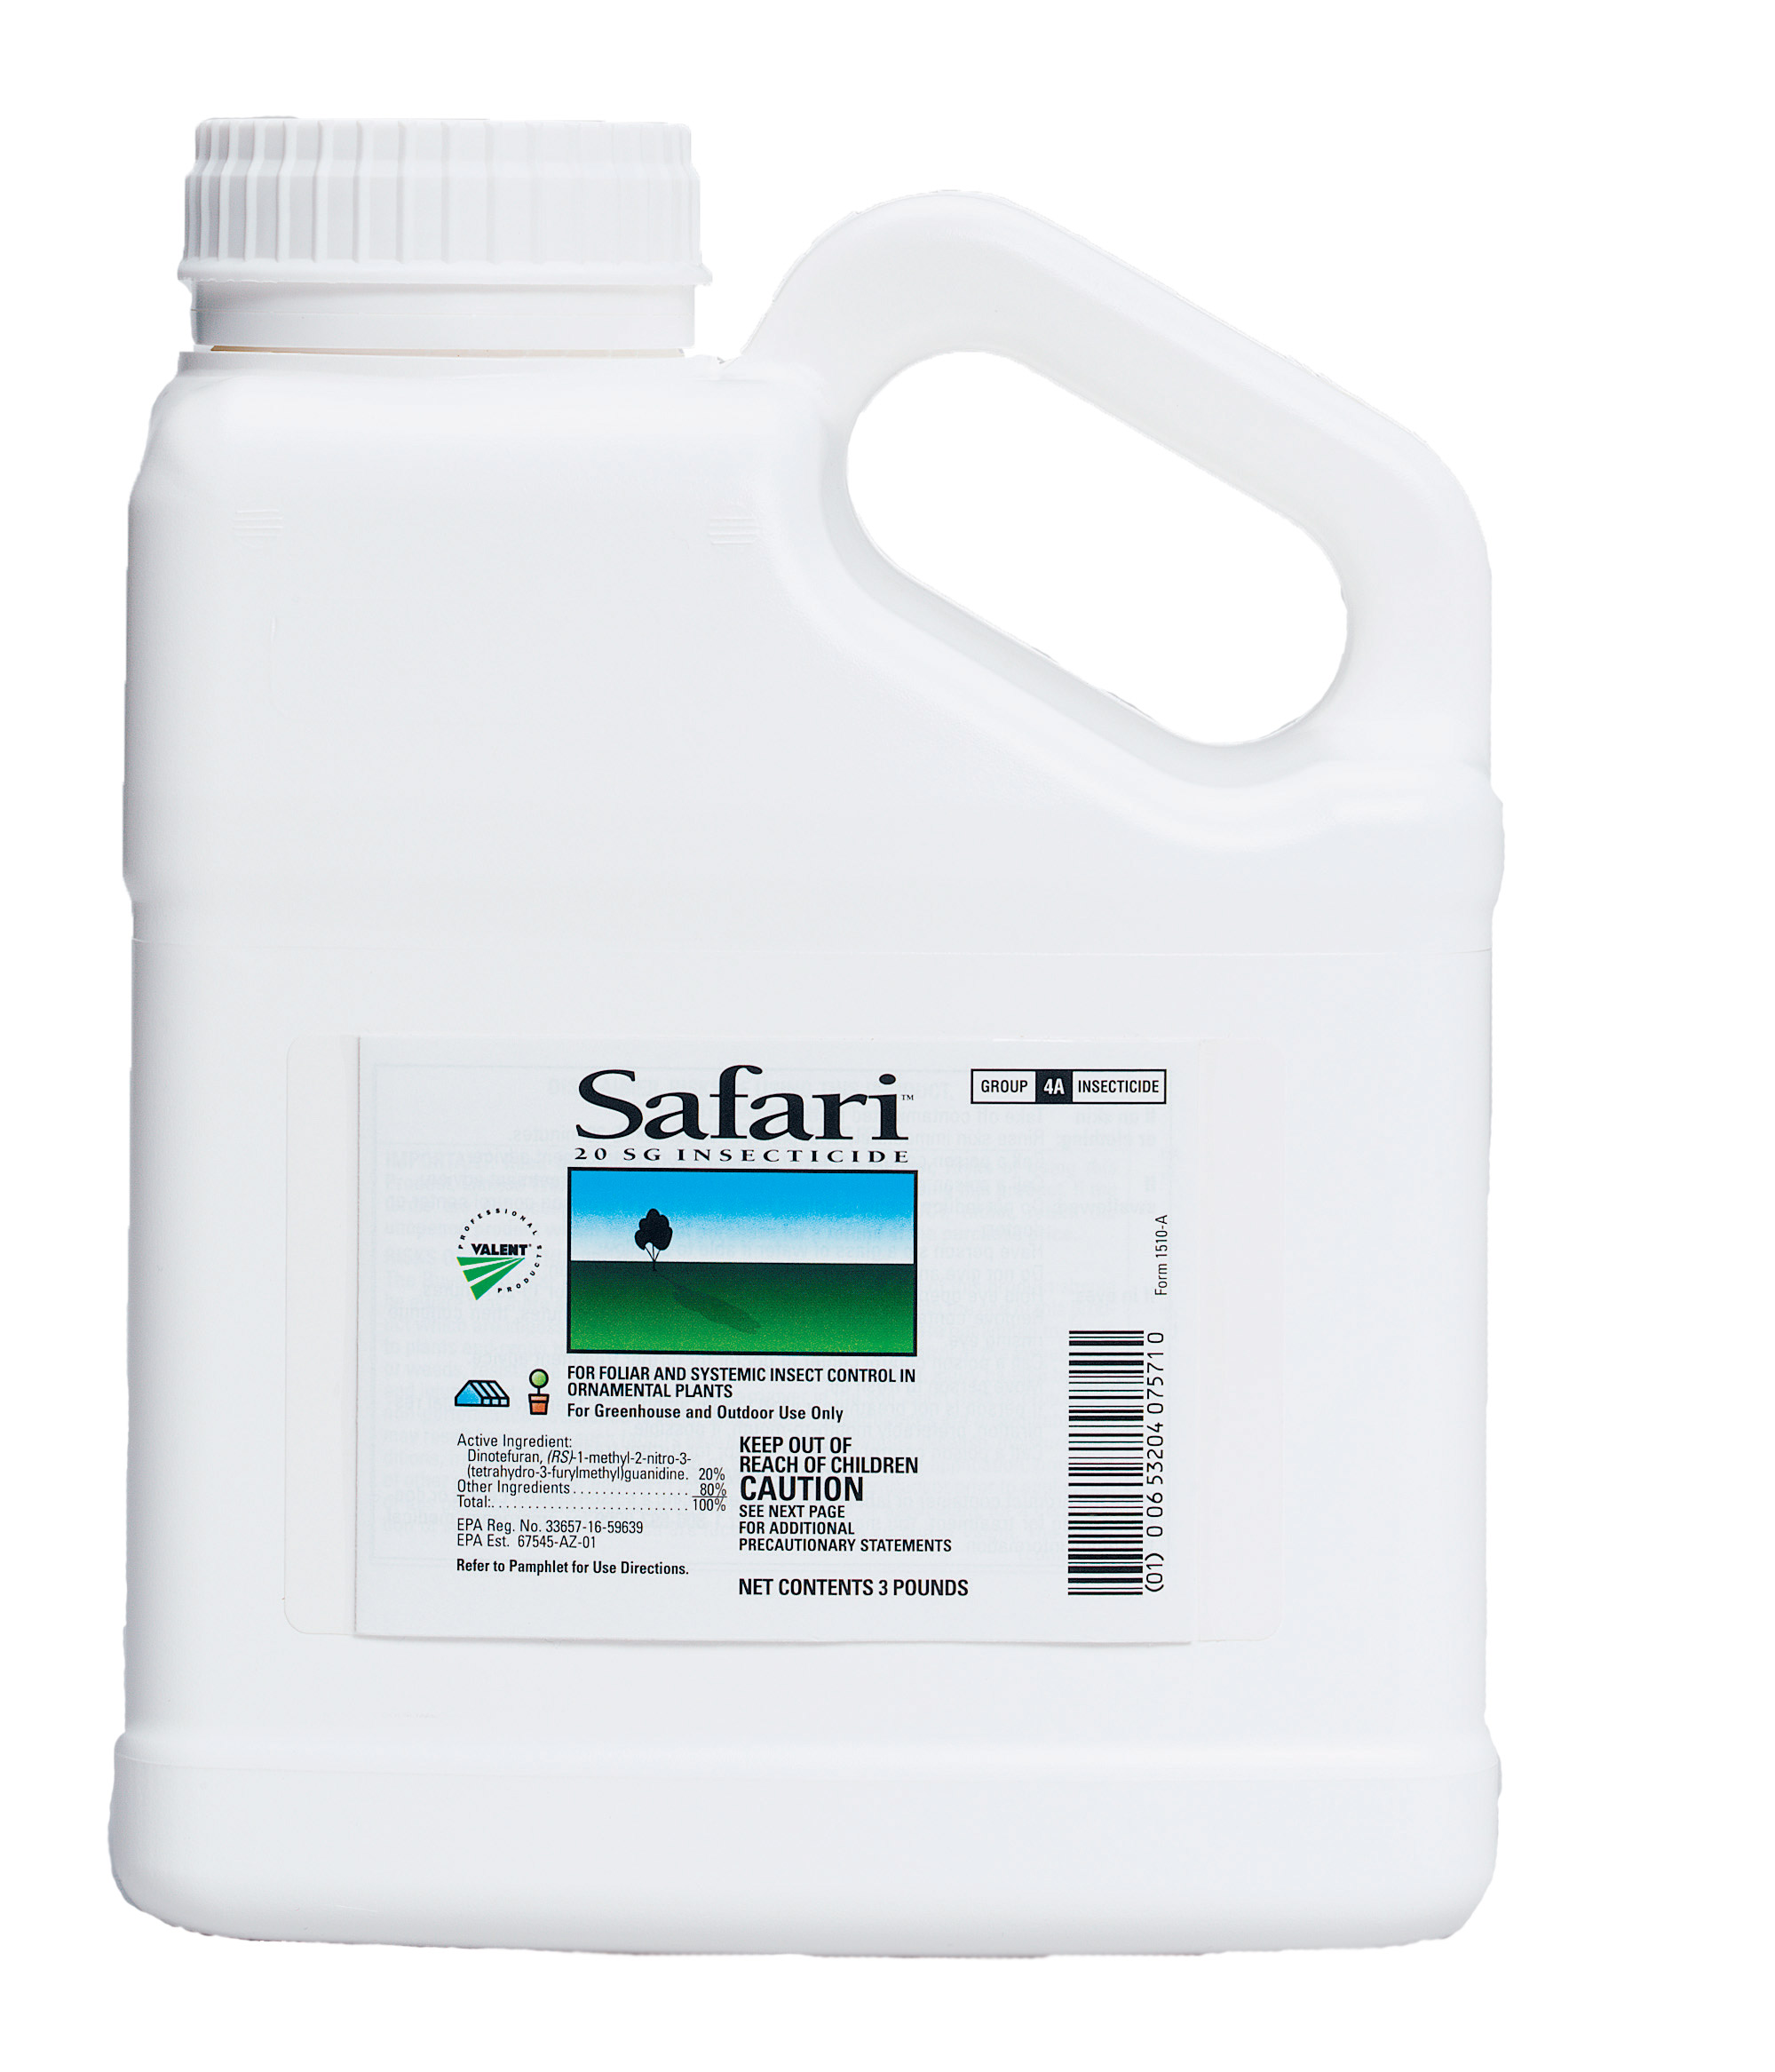 Safari 20 SG Insecticide 3 lb Bottle - 4 per case